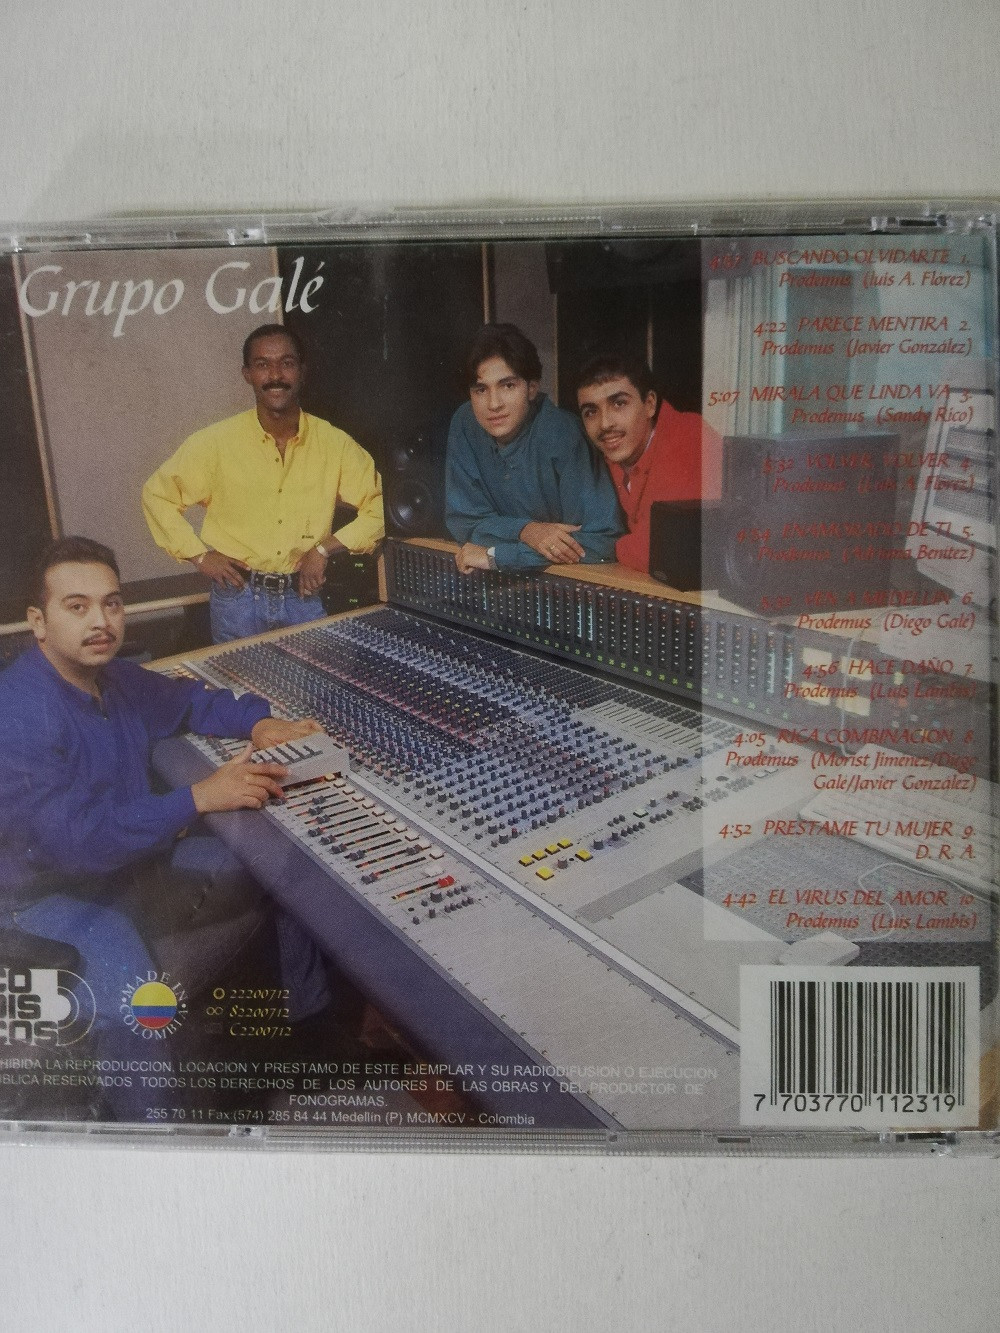 Imagen CD GRUPO GALÉ - AFIRMANDO 2